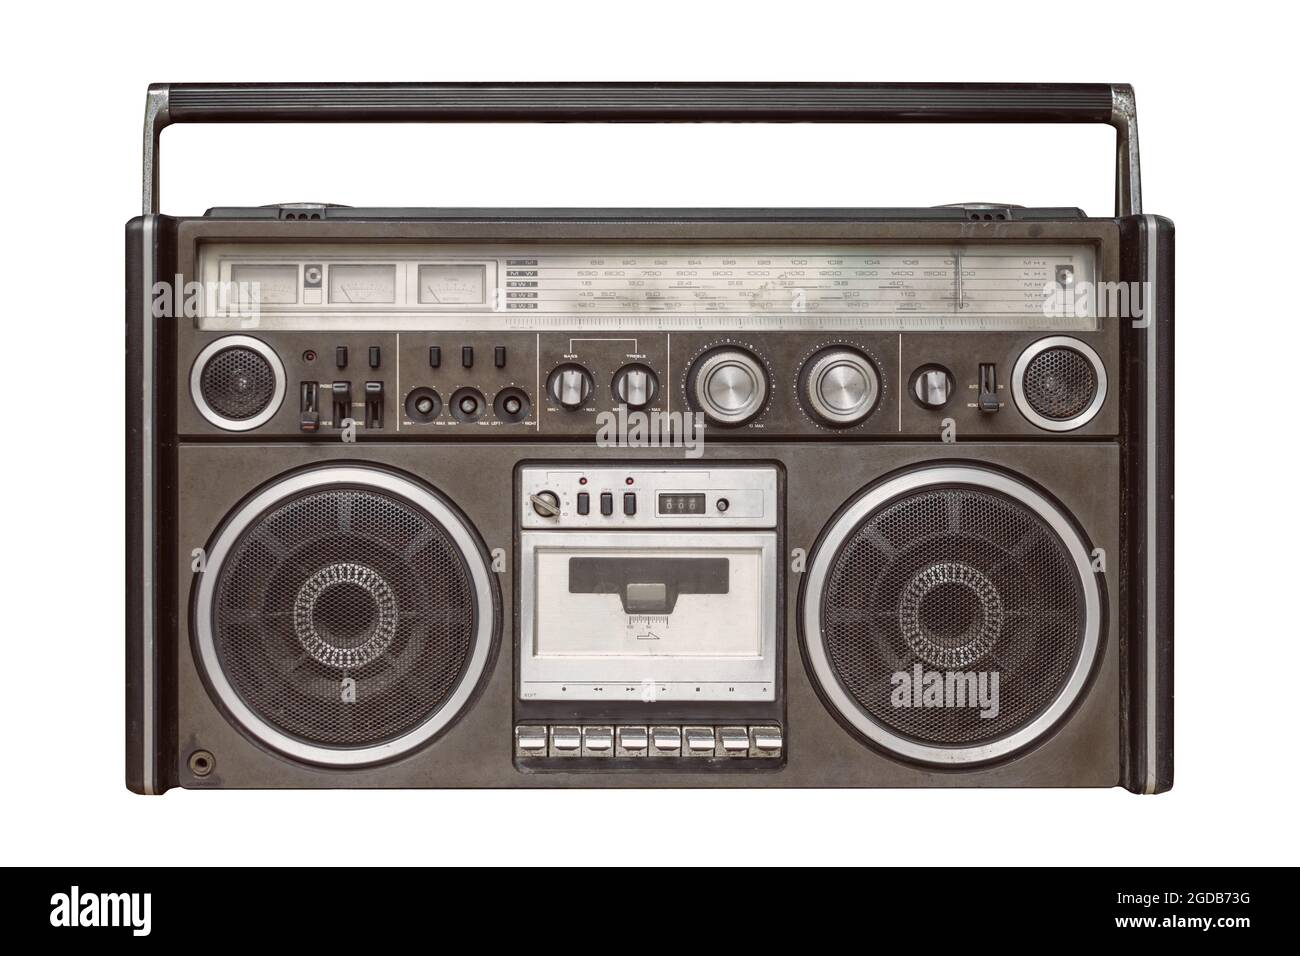 Reproductor de cinta de CD Boombox estilo clásico de los años 80,  reproductor de cassette retro Bluetooth con radio FM y Dab+, grabación USB,  radio